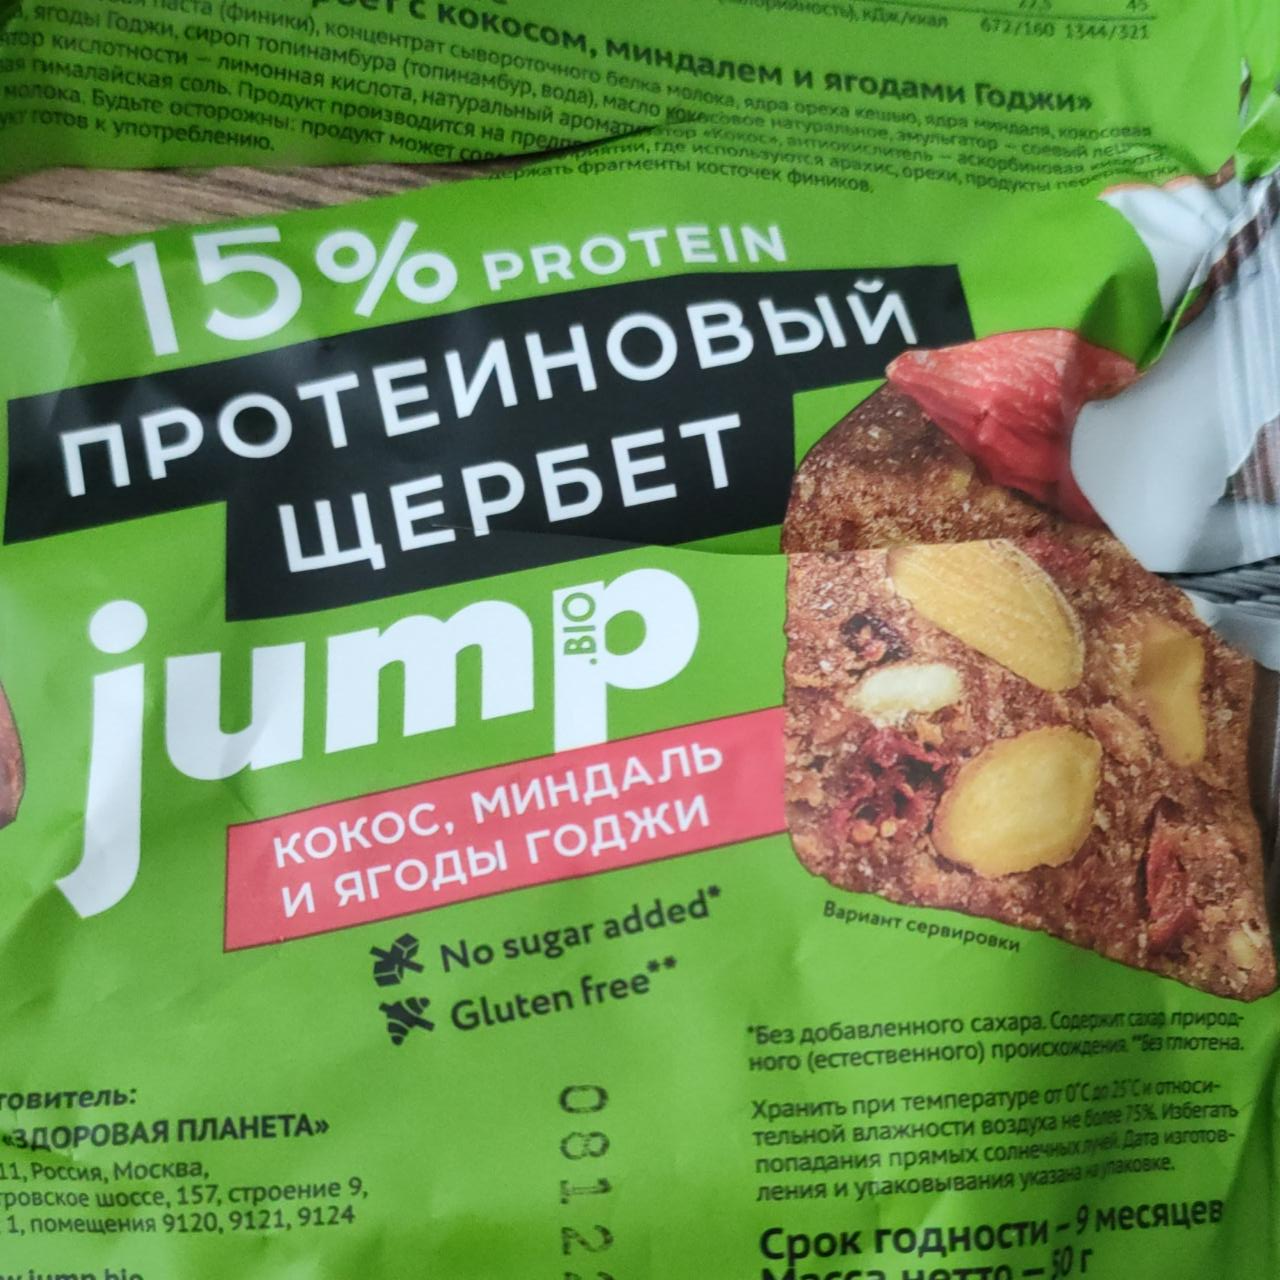 Фото - Протеиновый щербет jump Кокос, миндаль и ягоды годжи Jump